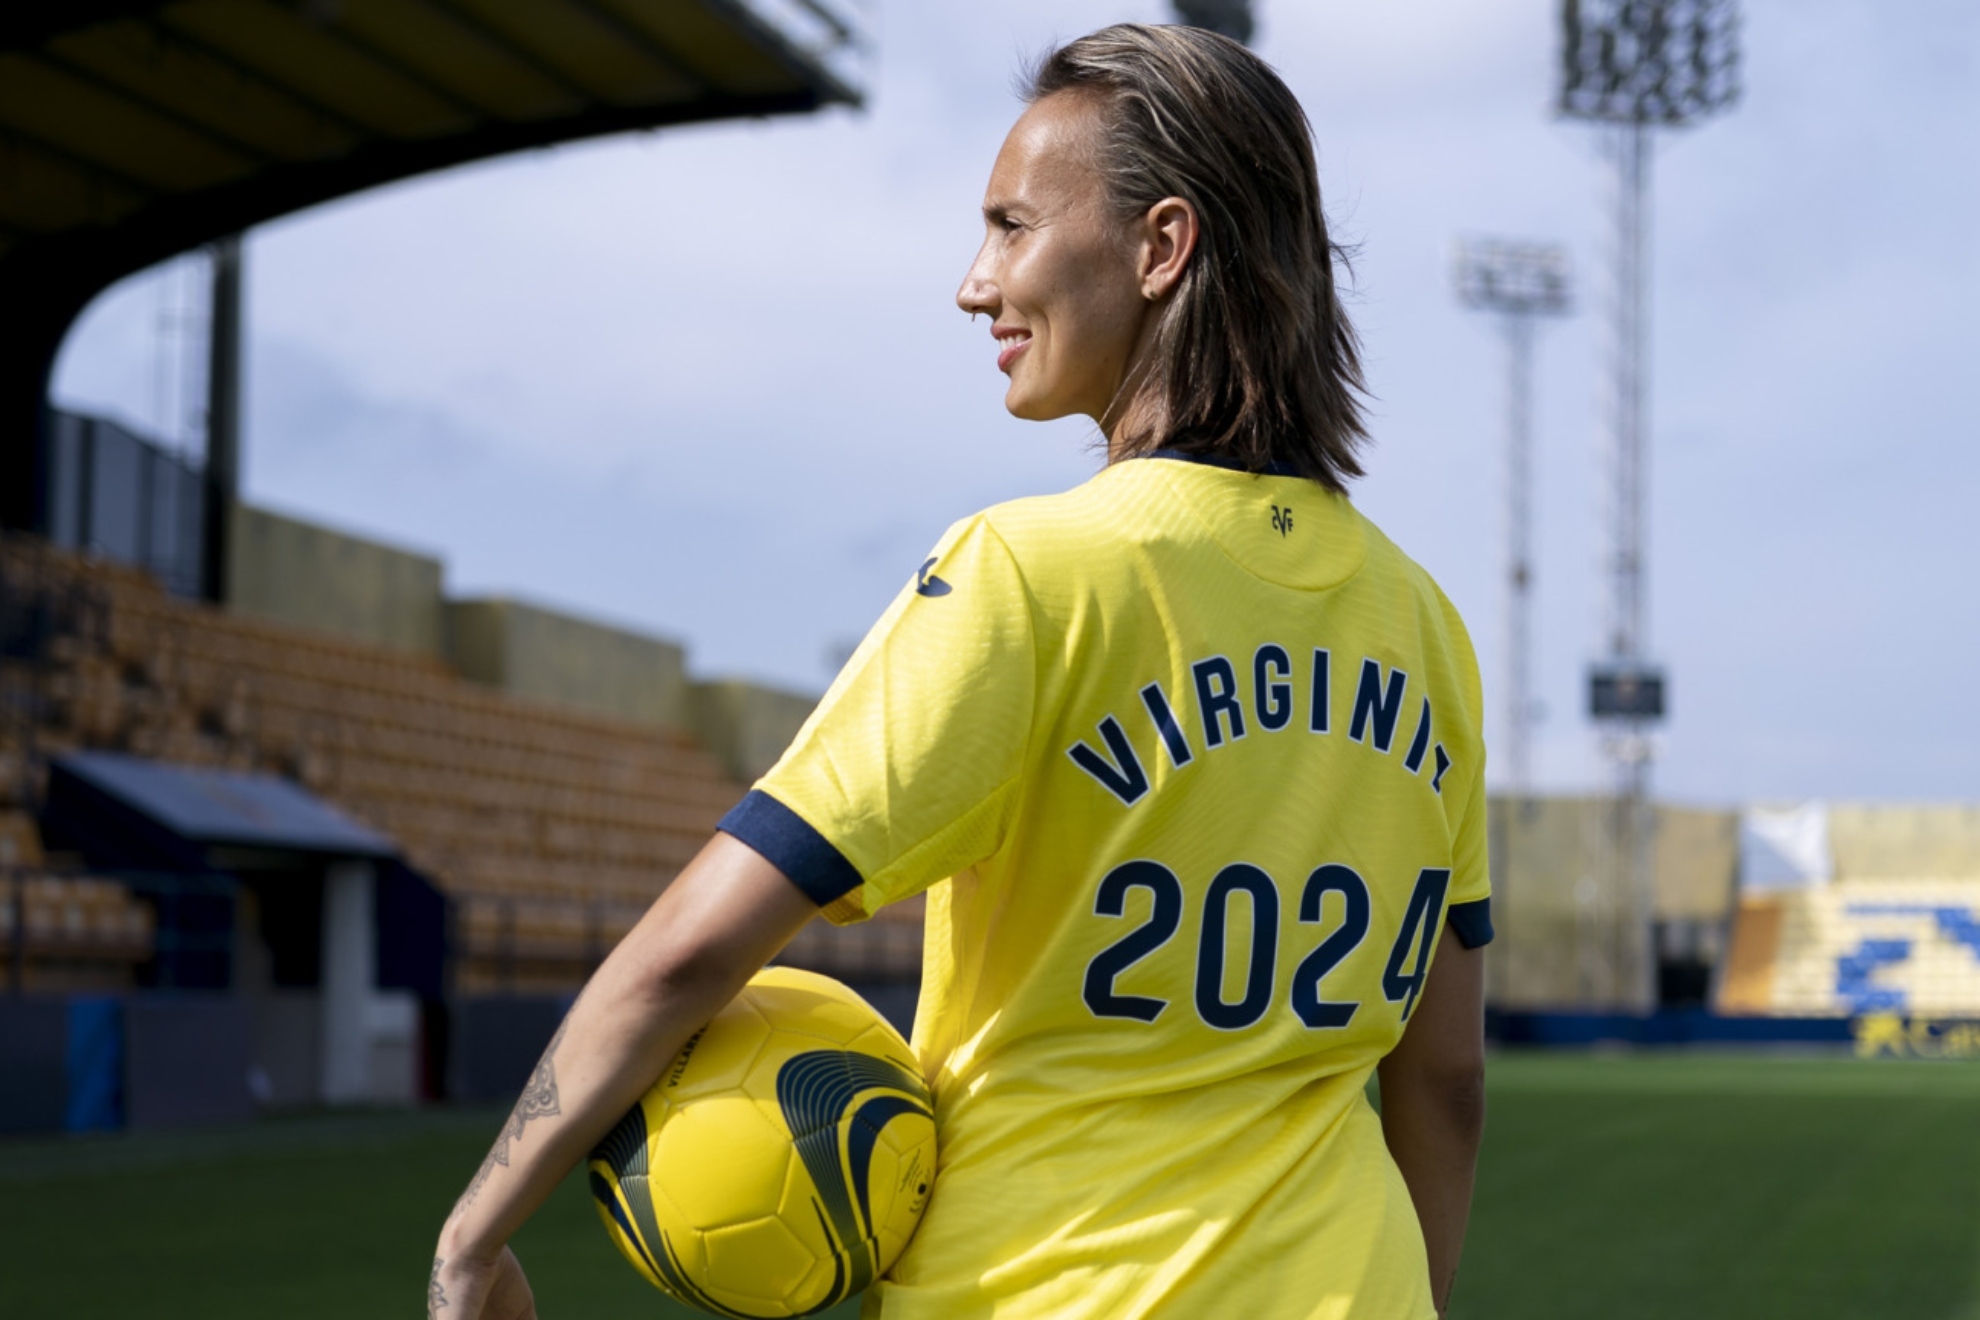 Virginia Torrecilla posa con la camiseta del Villarreal y el dorsal 2024, el año hasta el que firmado con el club.